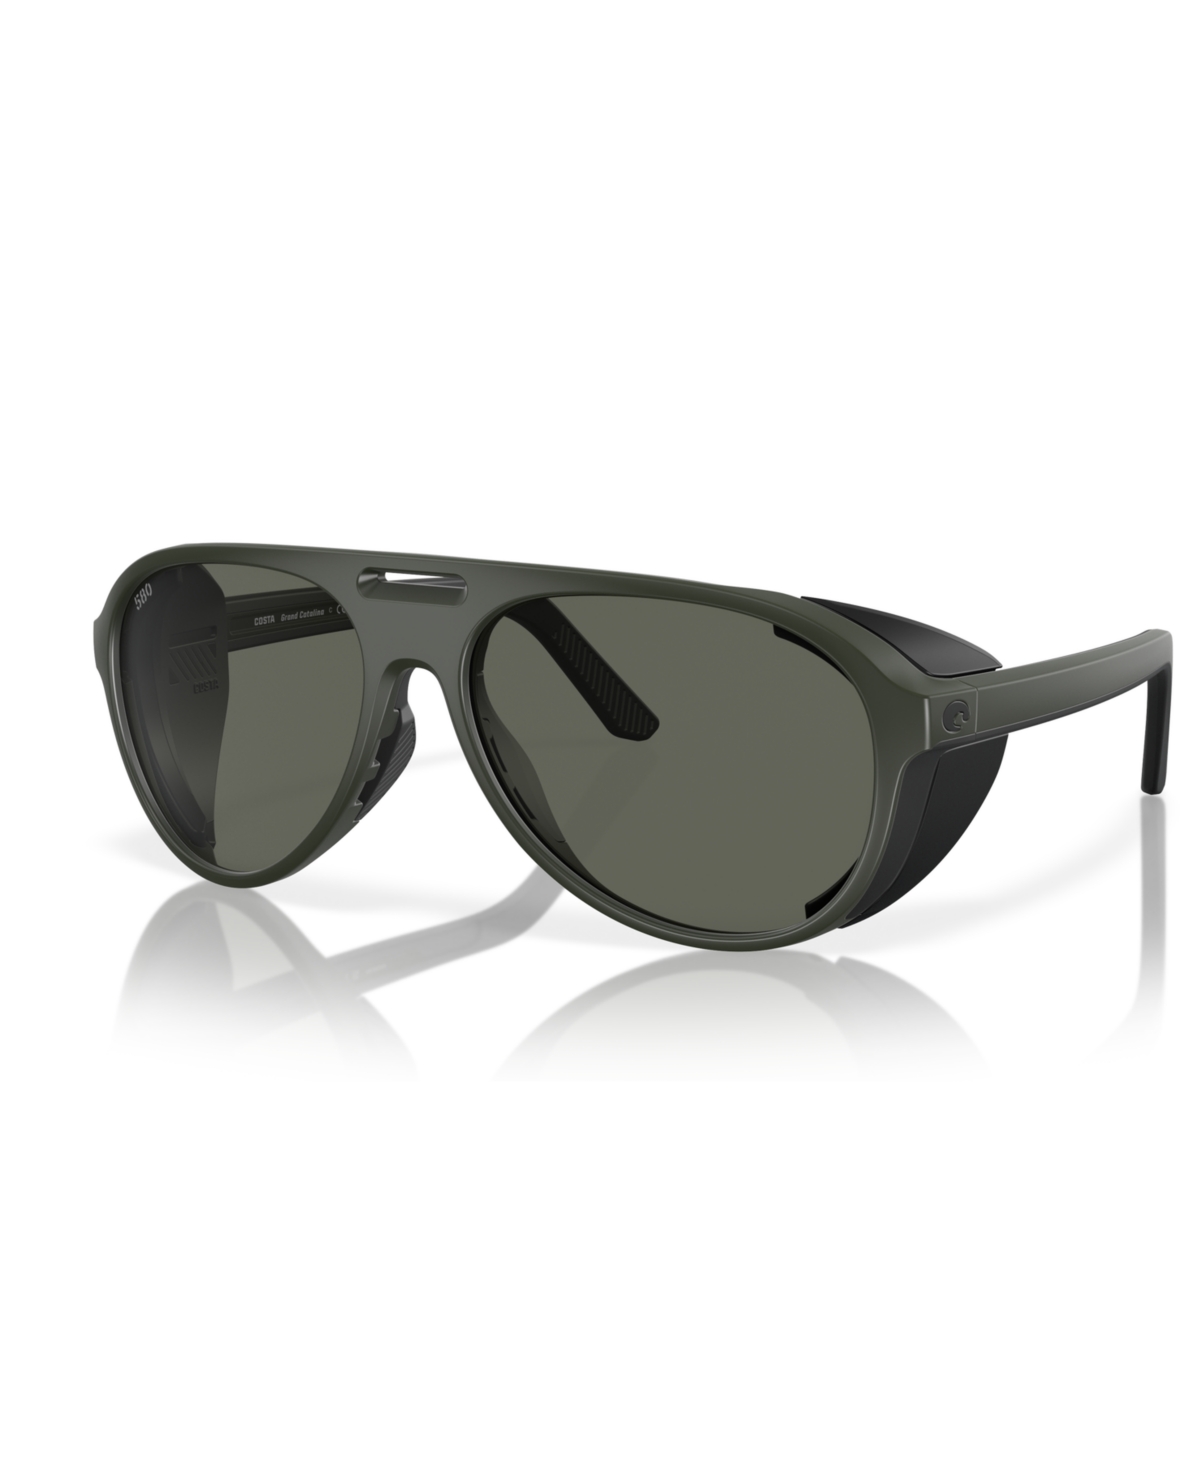 Costa Del Mar Men's Polarized Sunglasses, Grand Catalina 6s9117 In